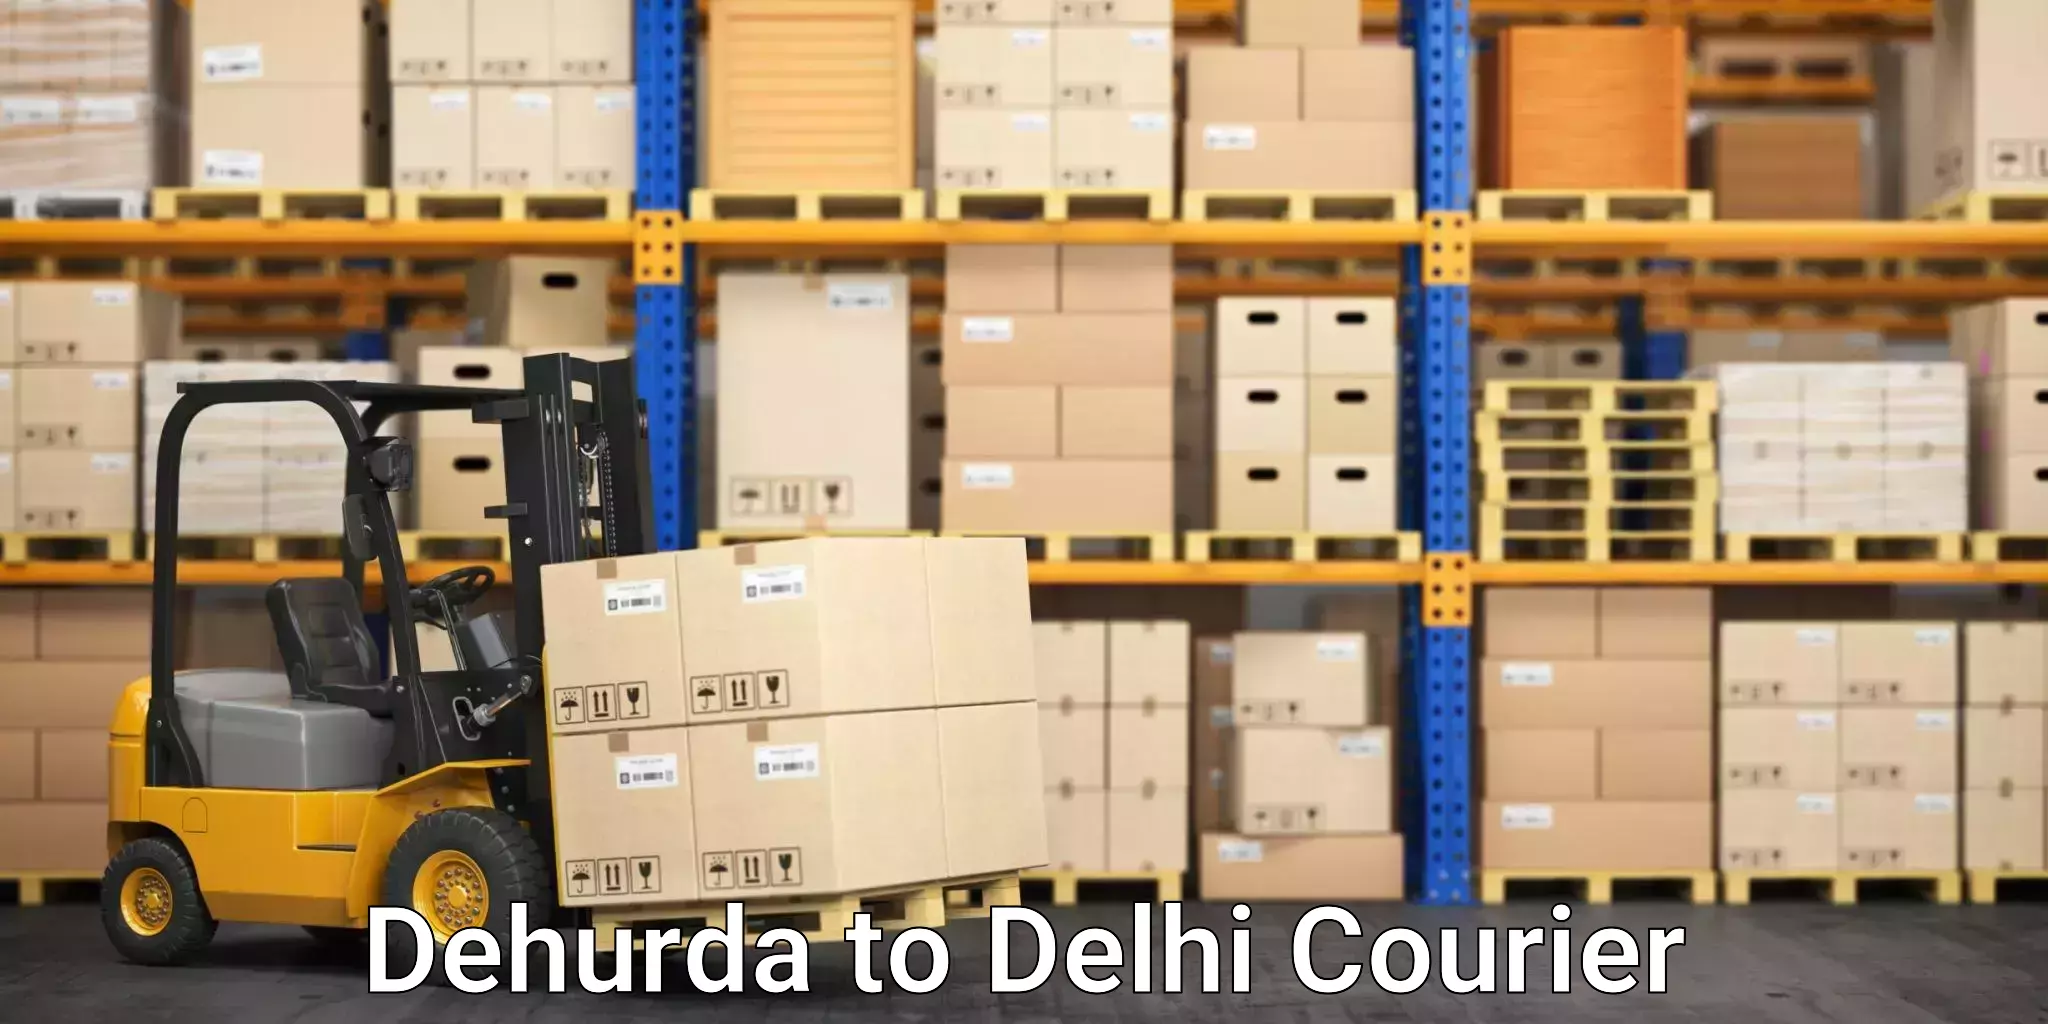 Retail shipping solutions Dehurda to Subhash Nagar